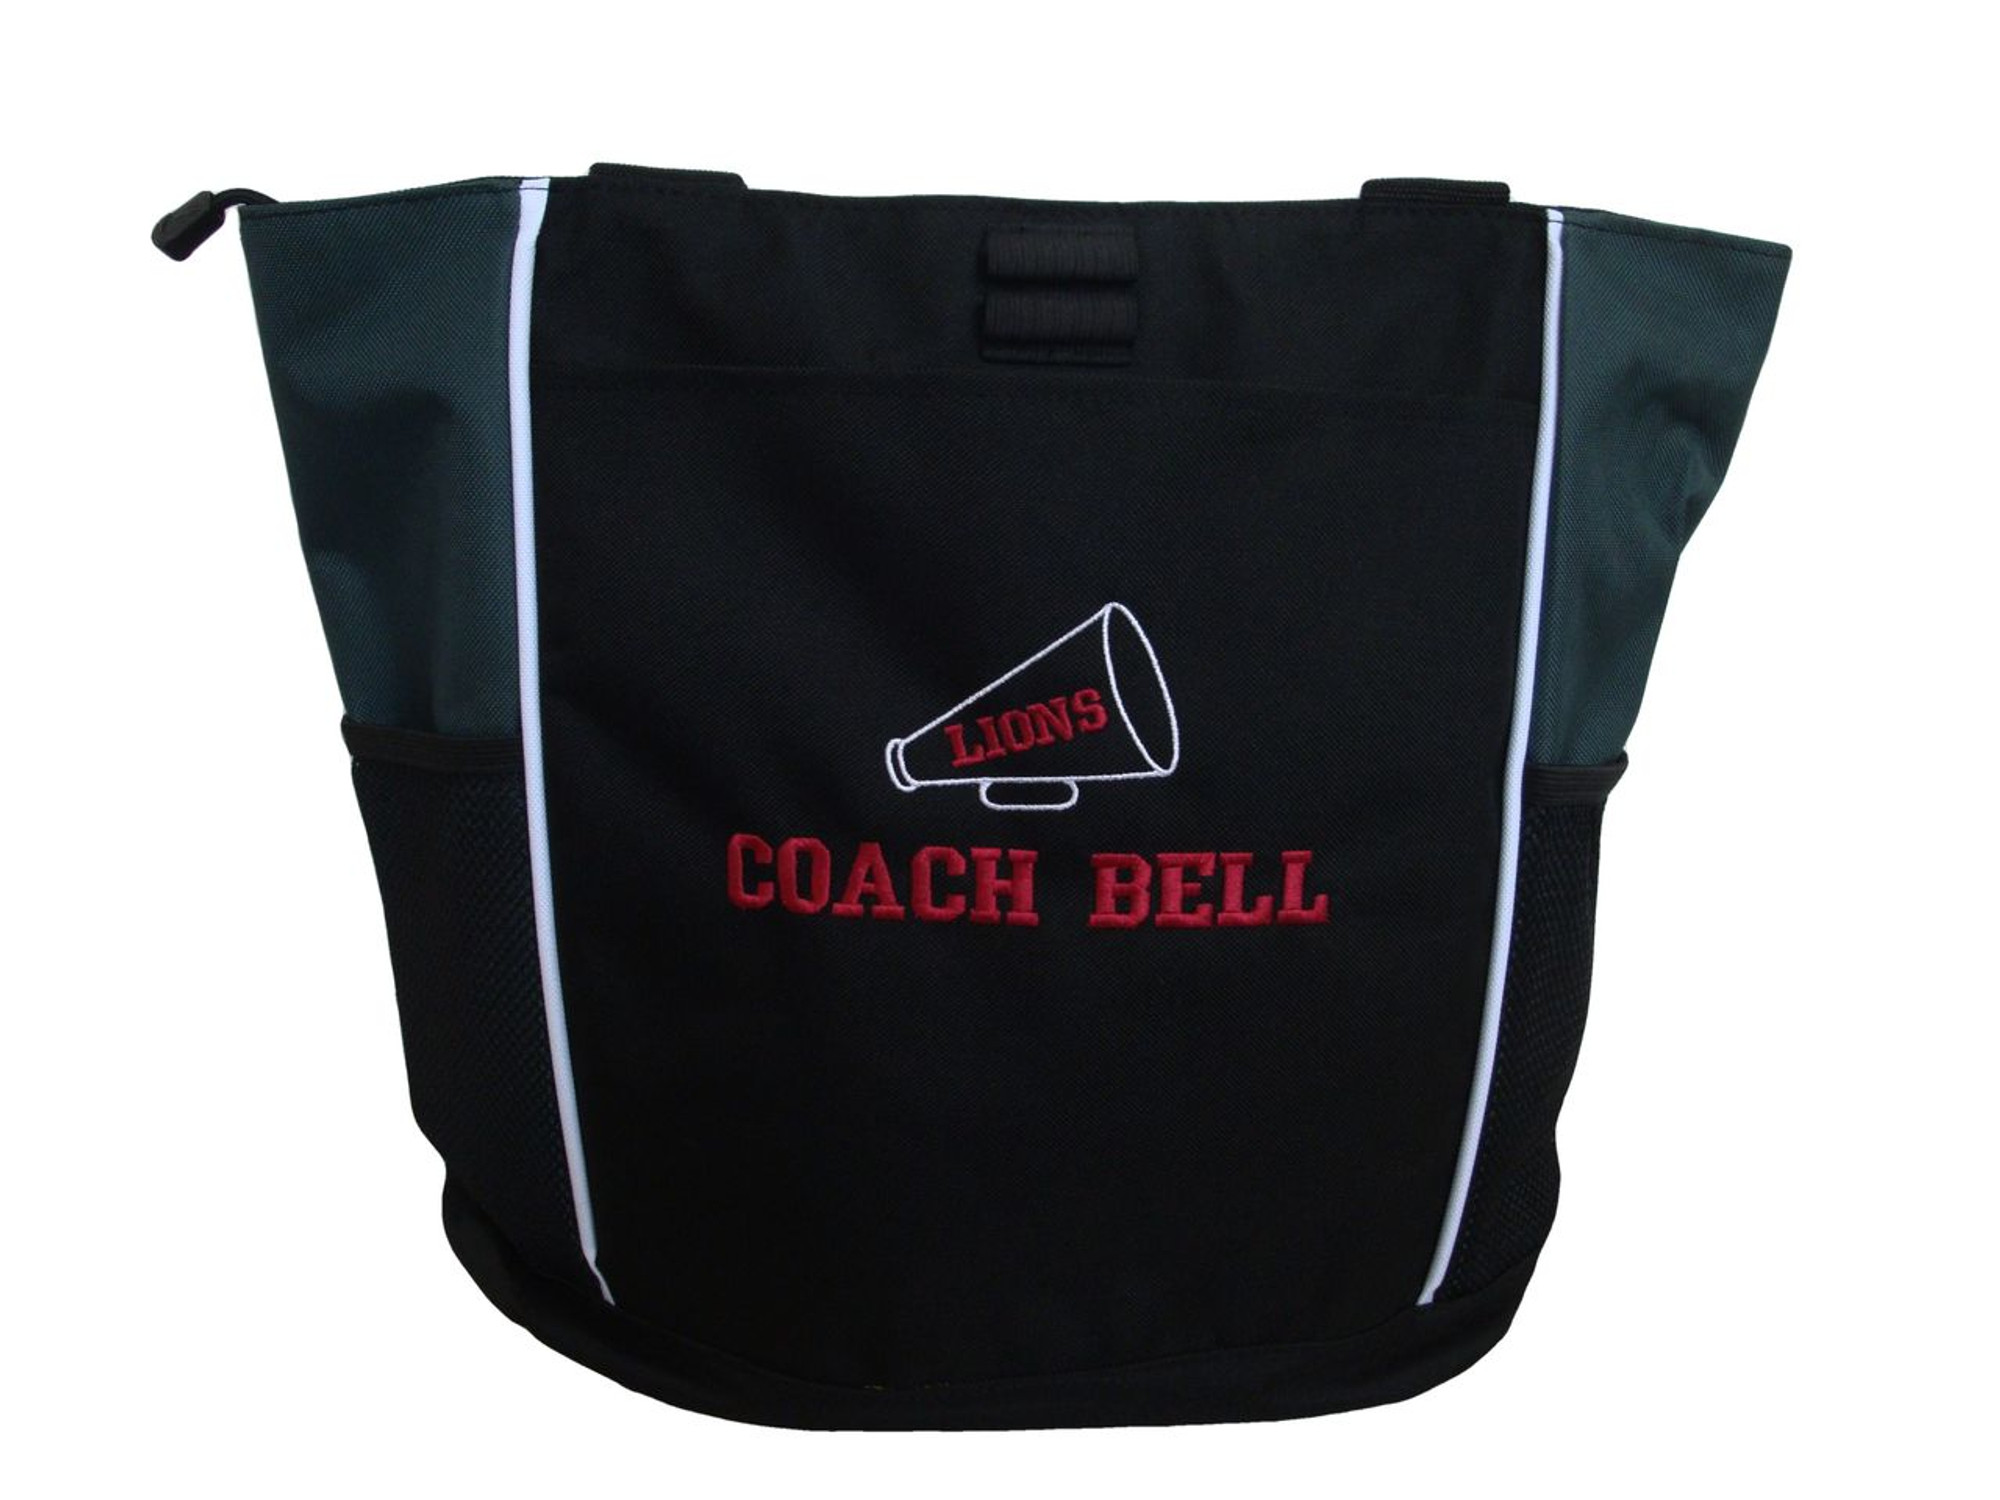 Coach Mermaid Tote Bags